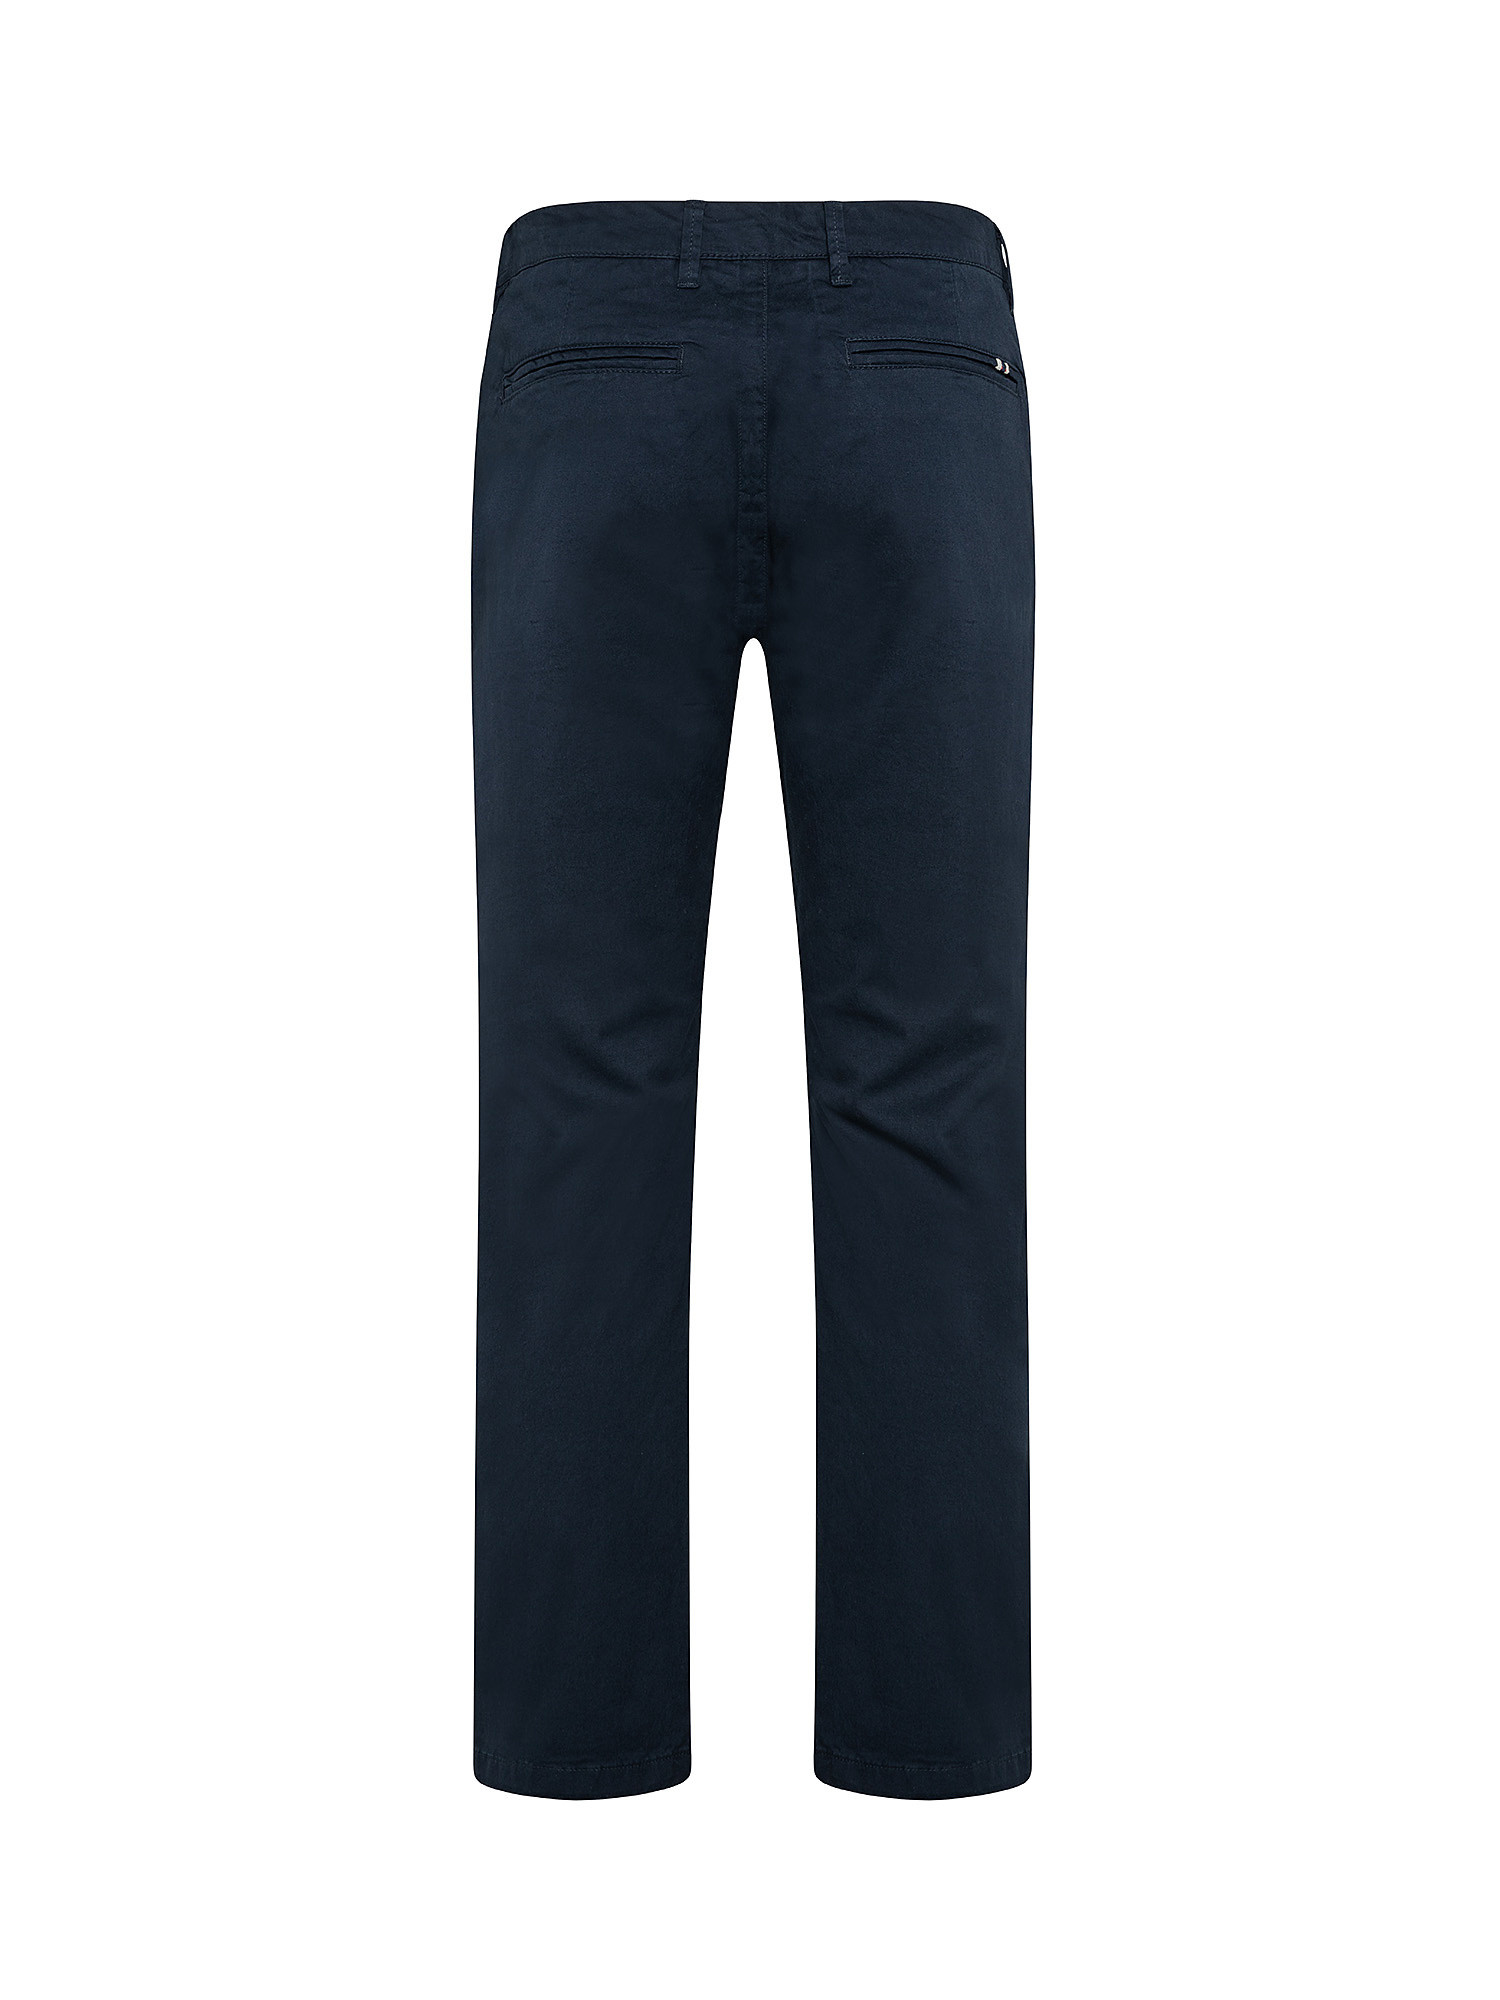 Pantalone chinos cotone stretch, Blu, large